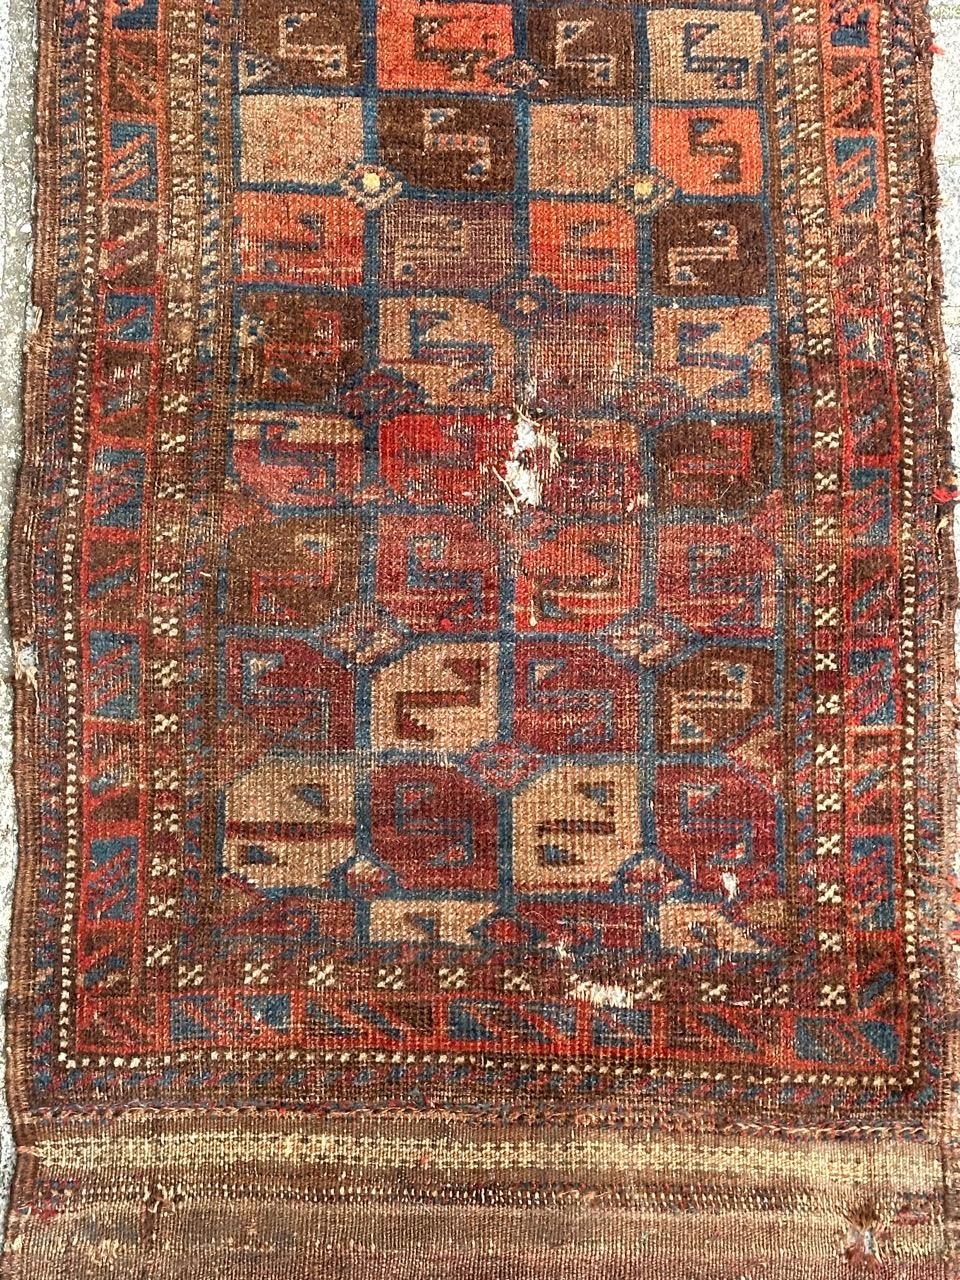 Joli tapis de sac turkmène de la fin du 19e siècle, avec de beaux motifs tribaux et géométriques, des symboles stylisés et de belles couleurs naturelles,  usures et dommages dus à l'âge et à l'utilisation, entièrement noué à la main dans la partie